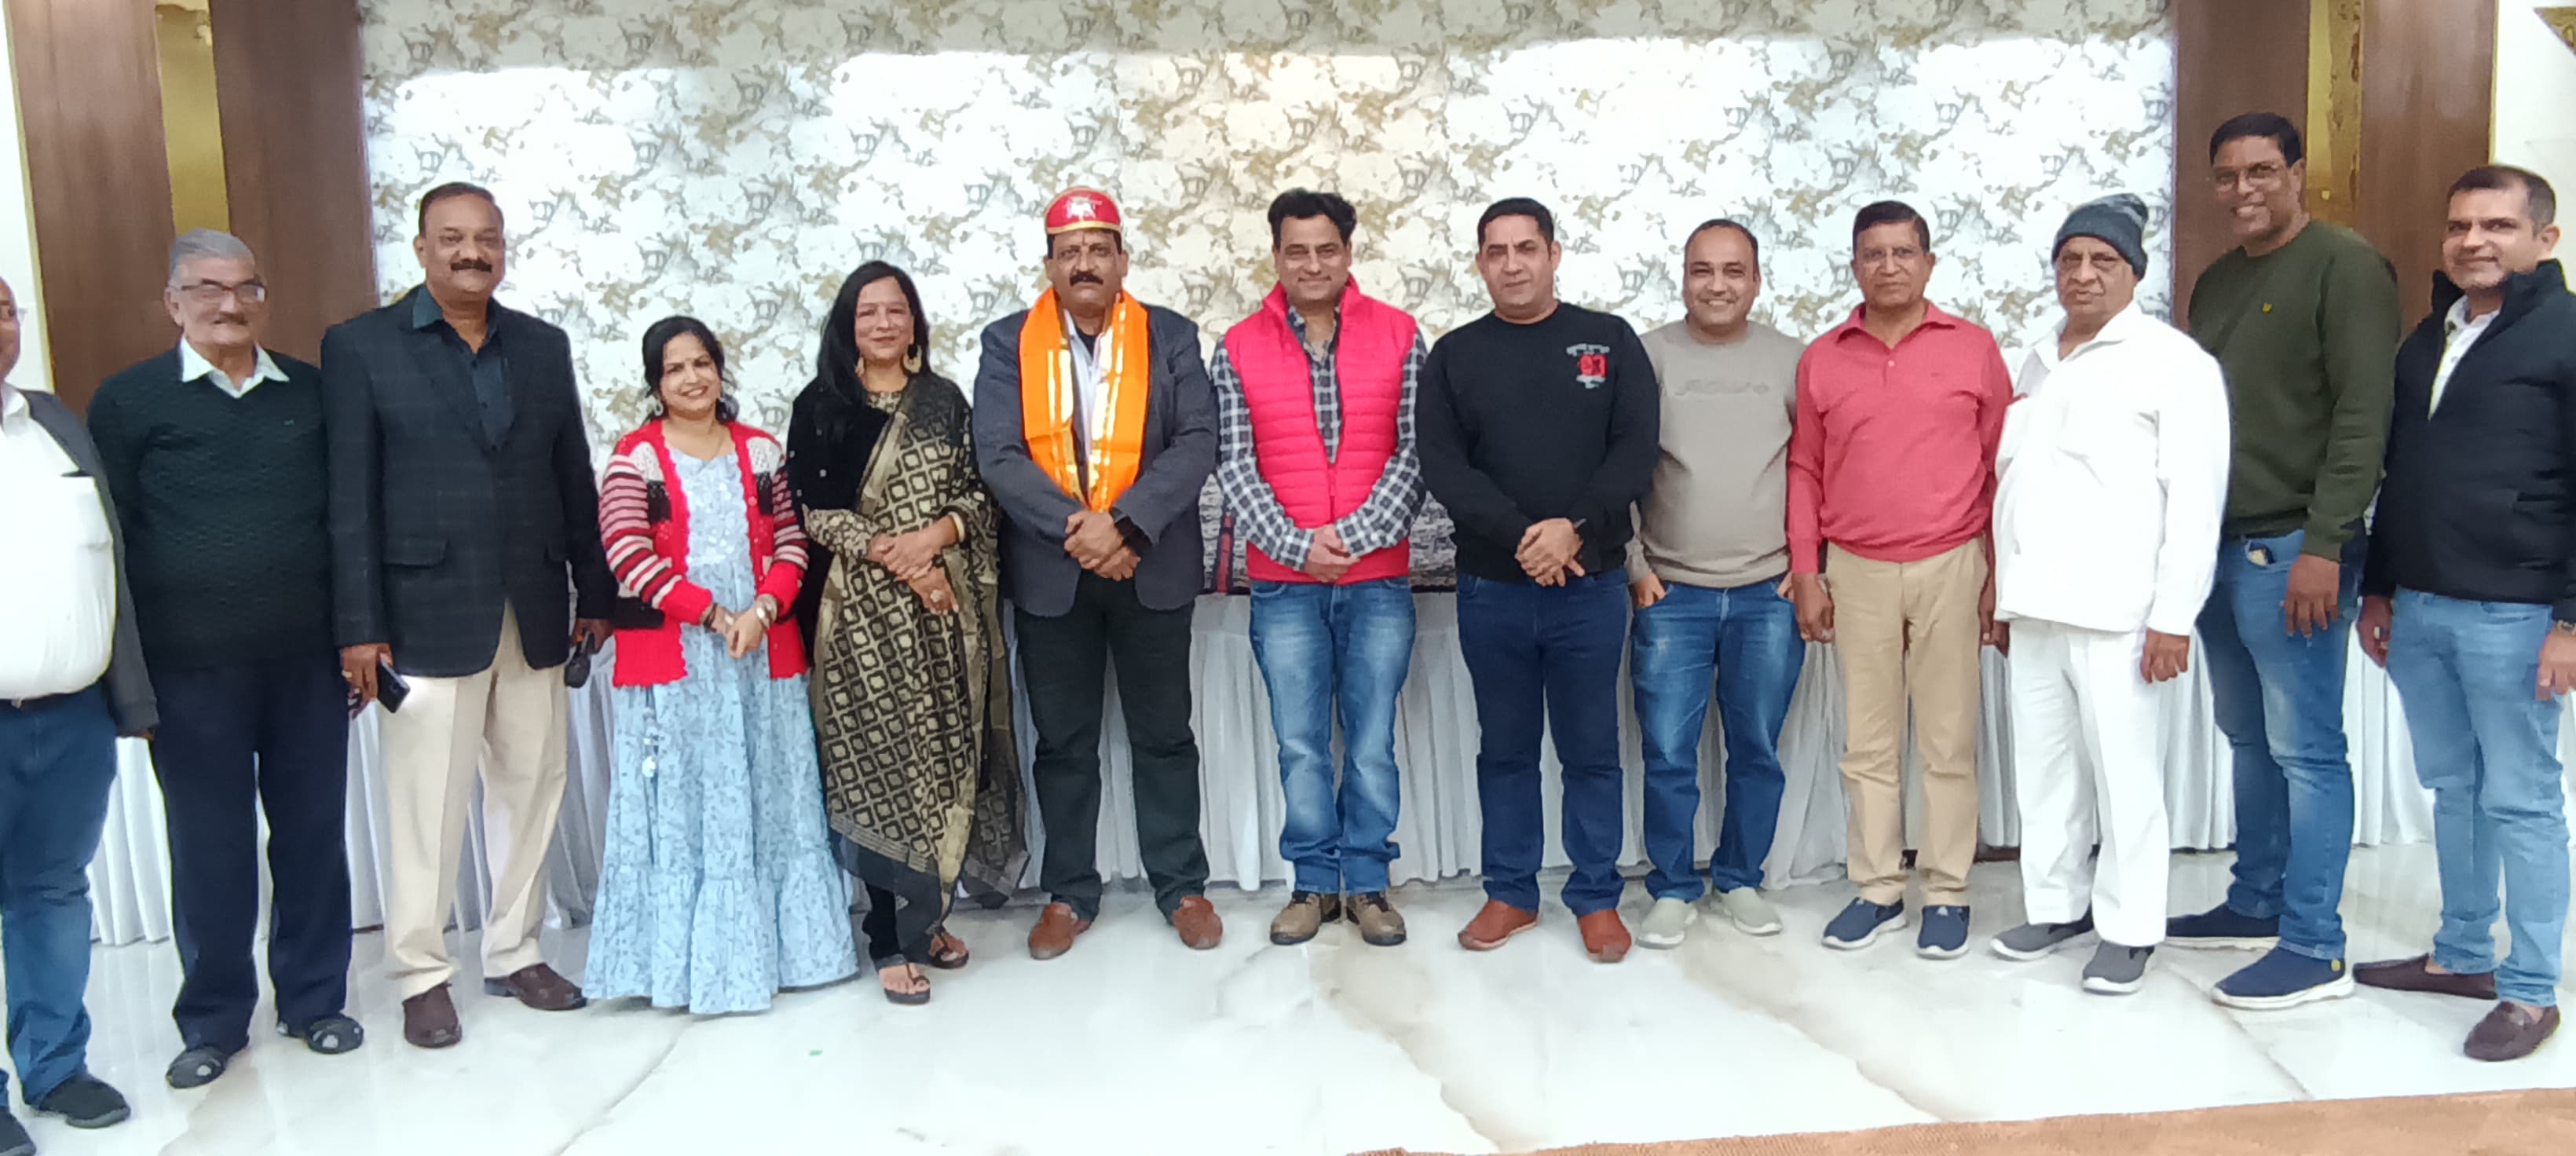 Udaipur's Suro Ki Mandali Celebrates National Recognition of Manmohan Bhatnagar